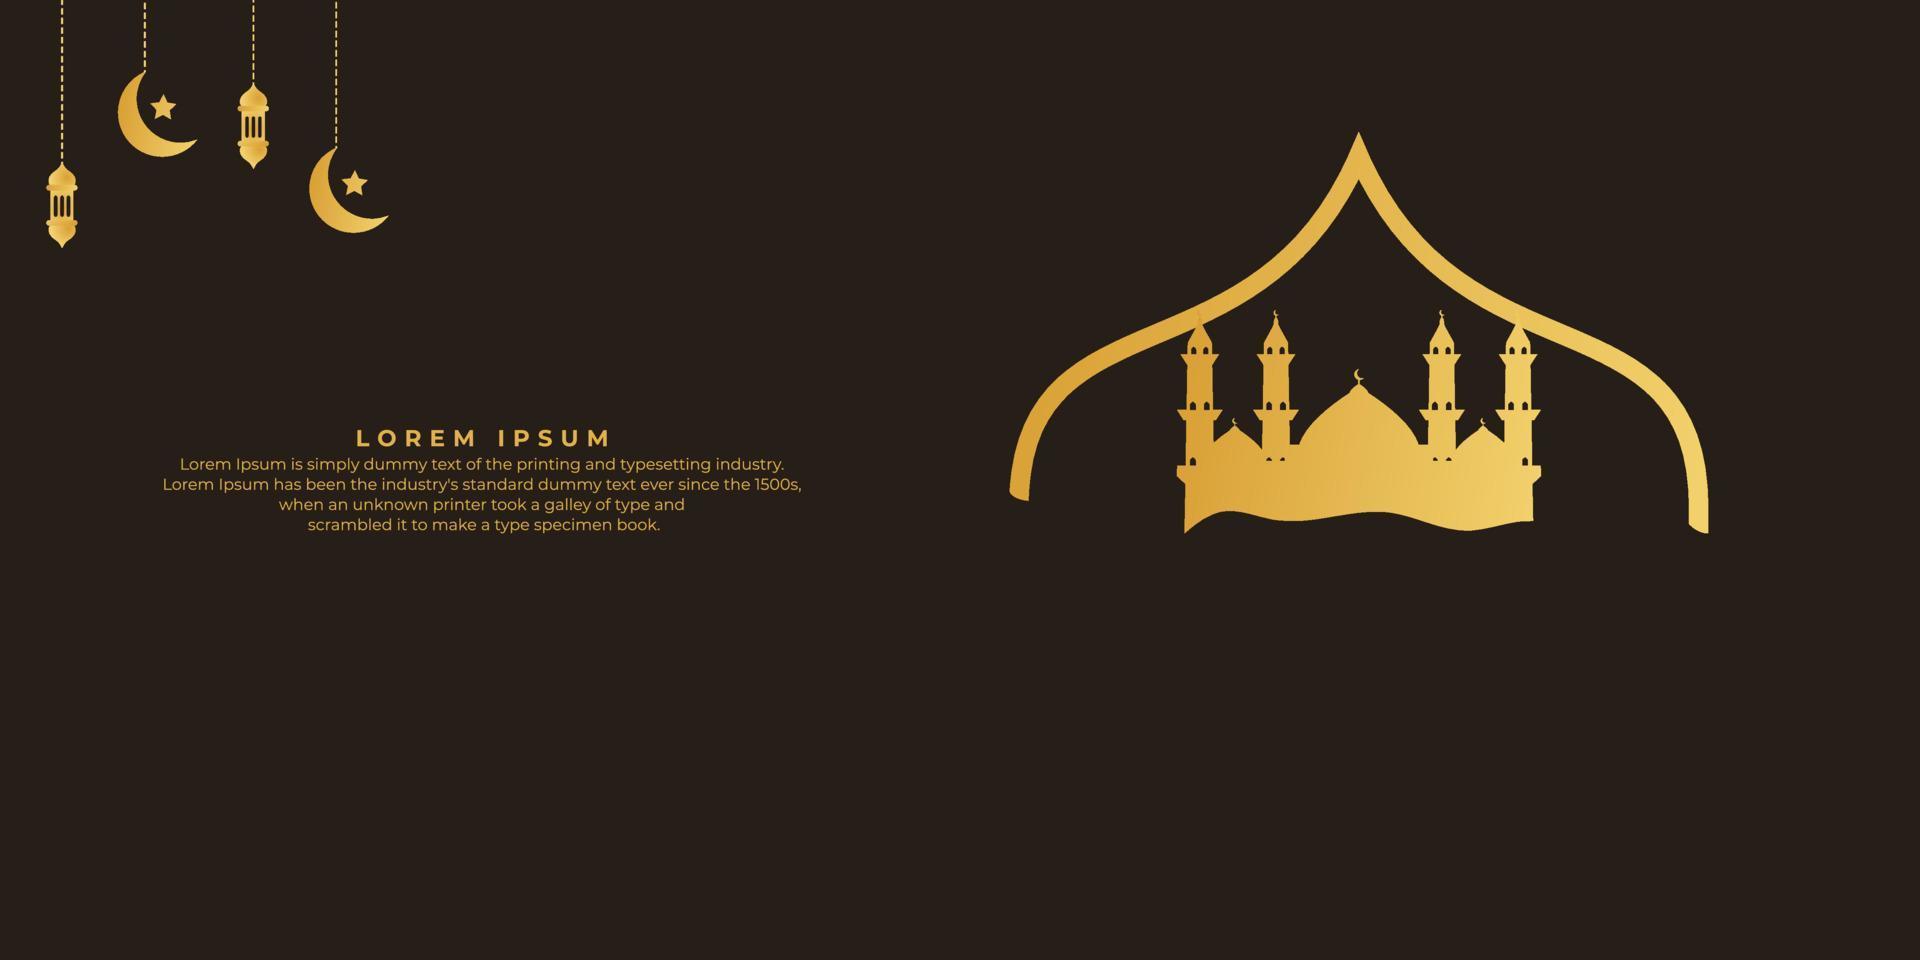 sfondo del ramadan kareem. sfondo islamico vettore